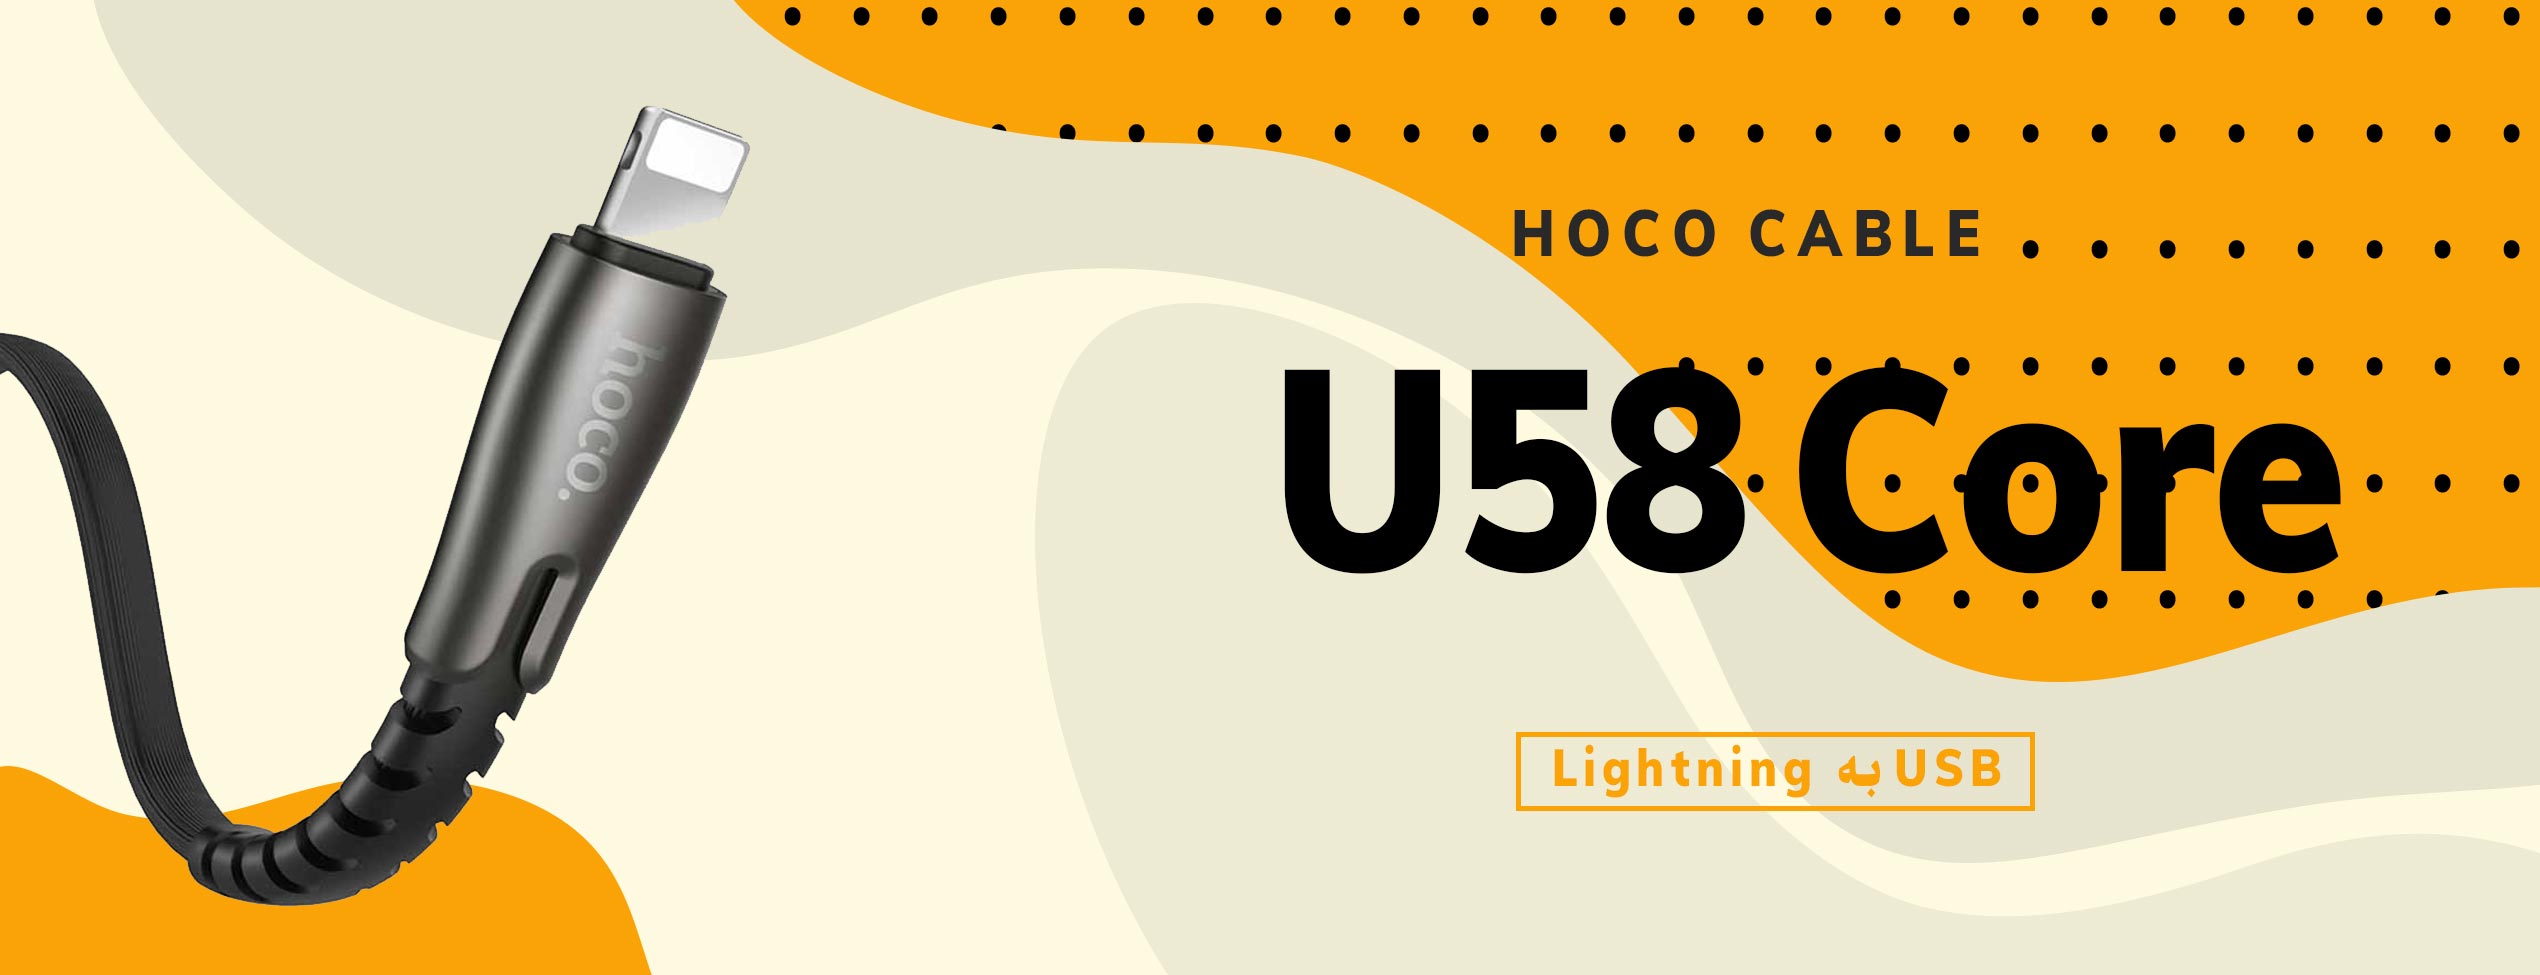 کابل شارژ لایتنینگ هوکو مدل U58 Core